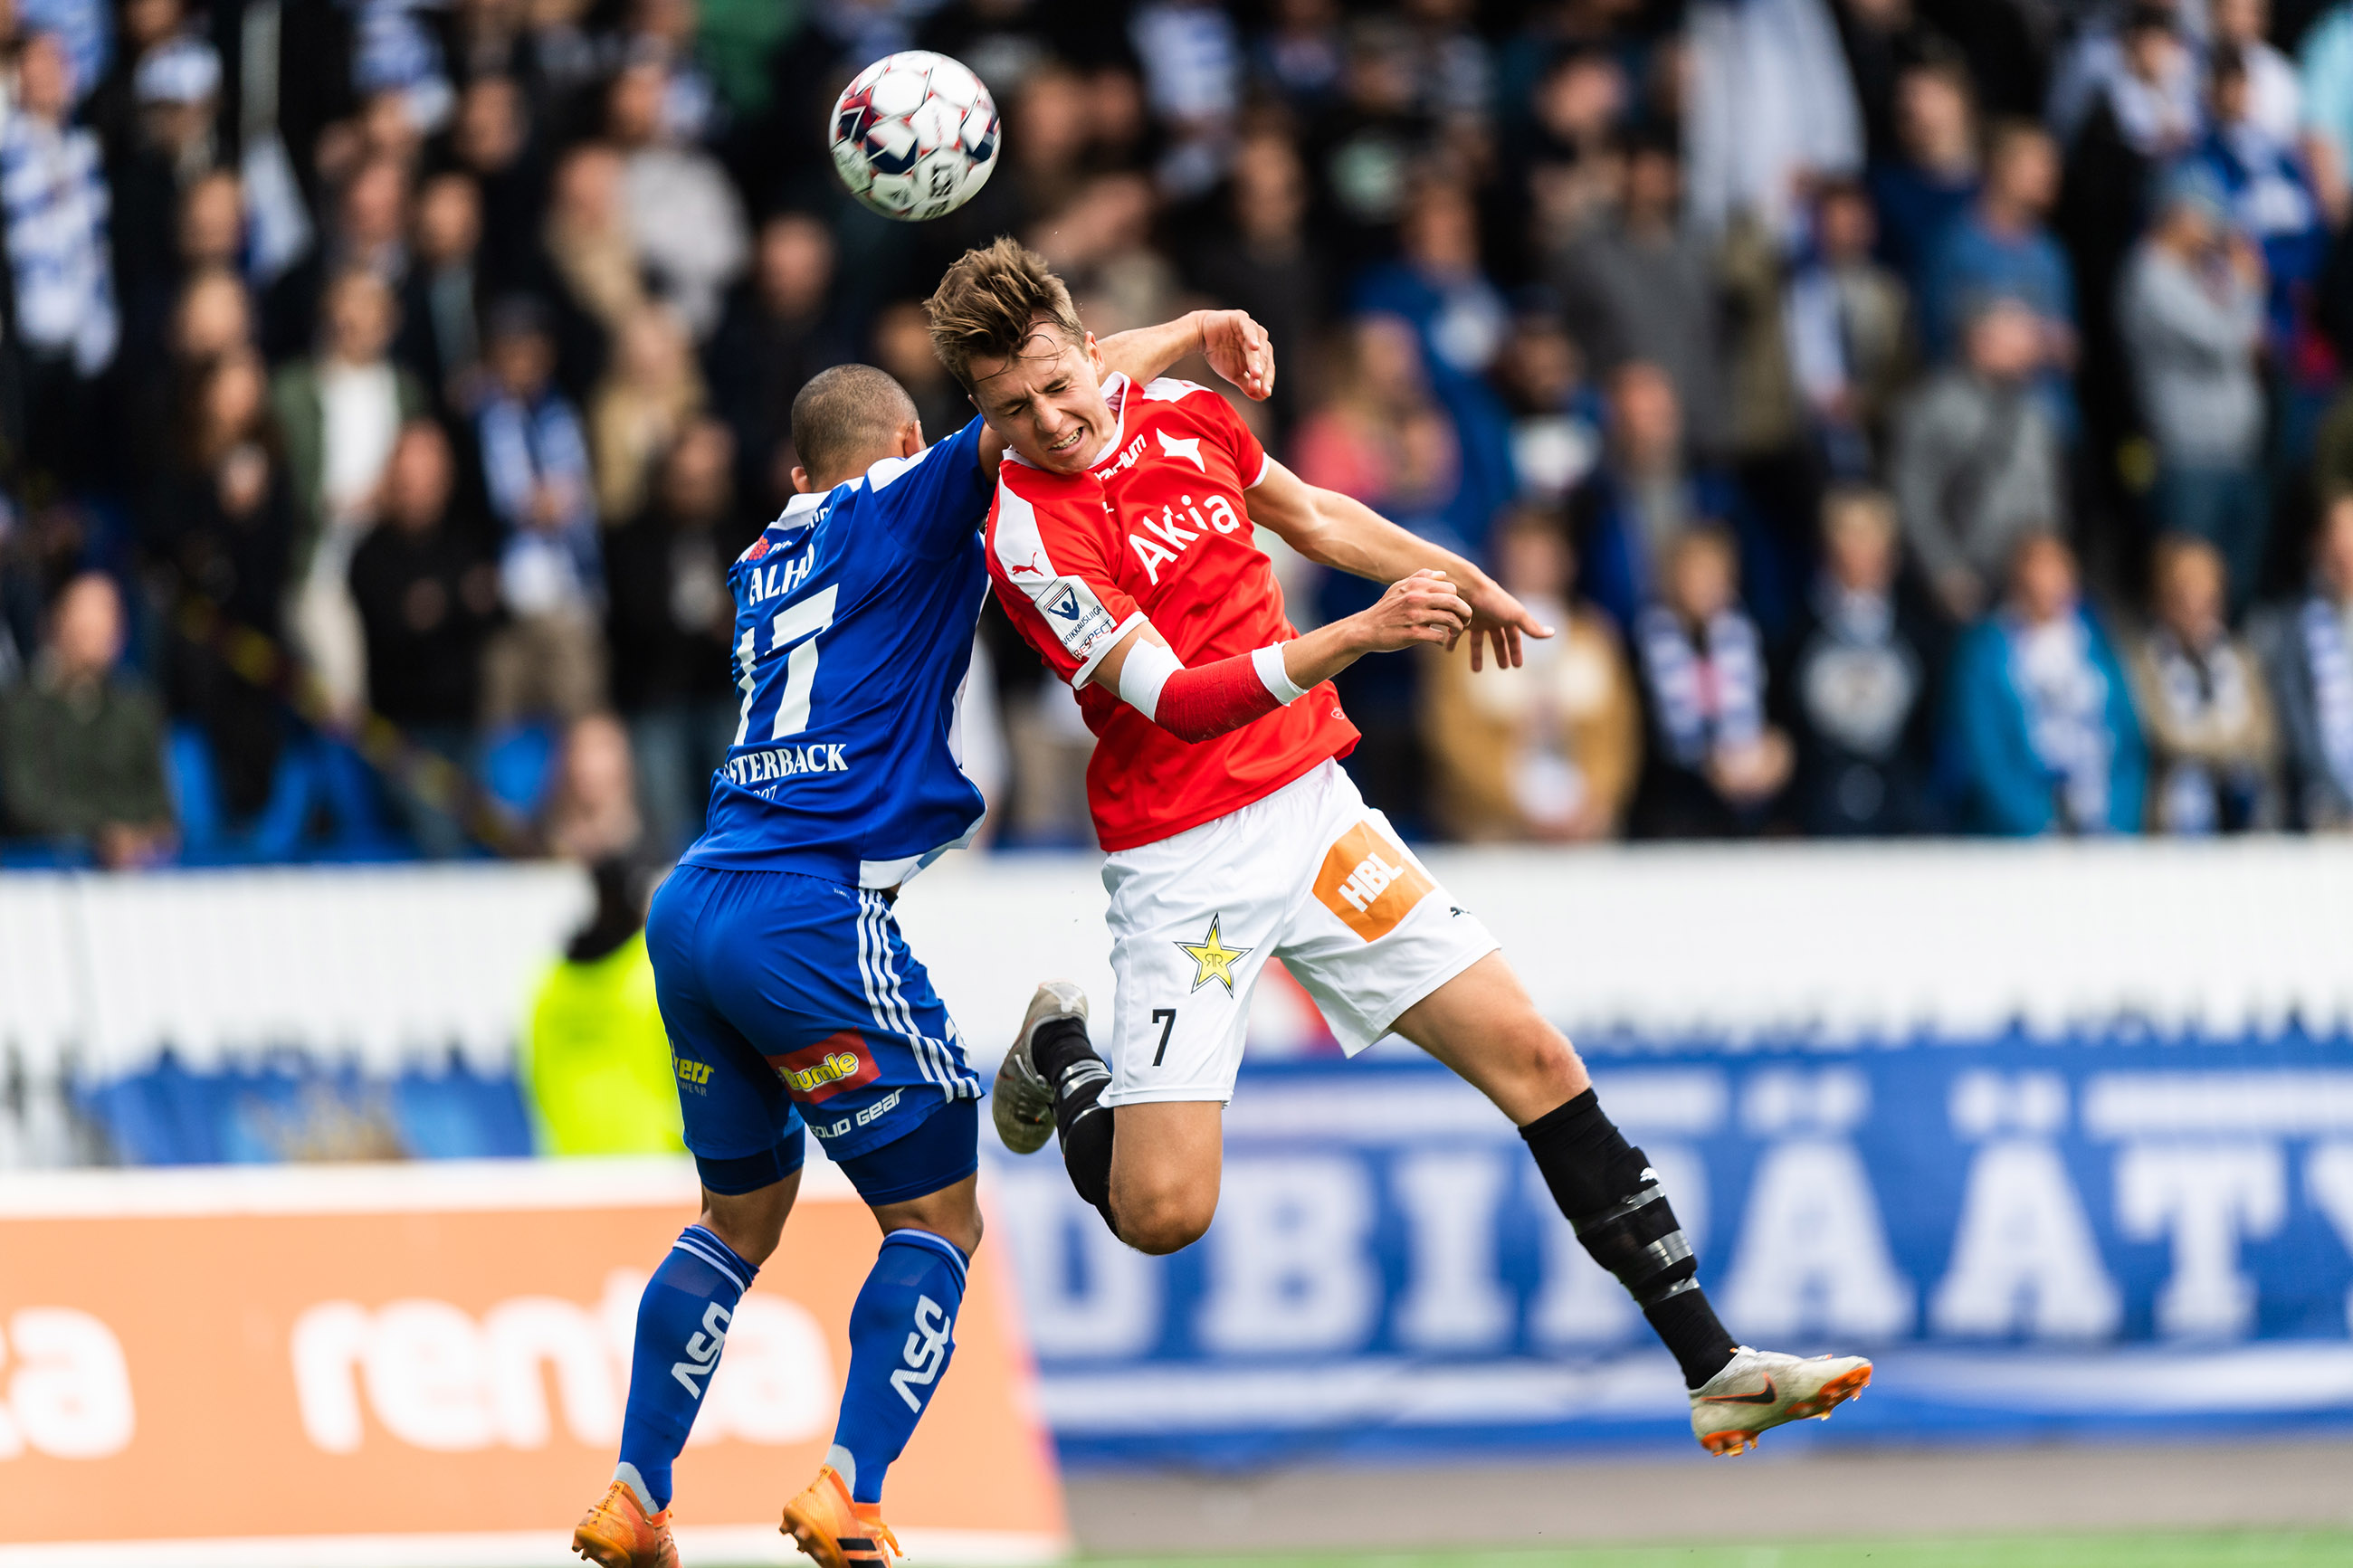 Otteluraportti: HJK vei voiton Stadin Derbyssä